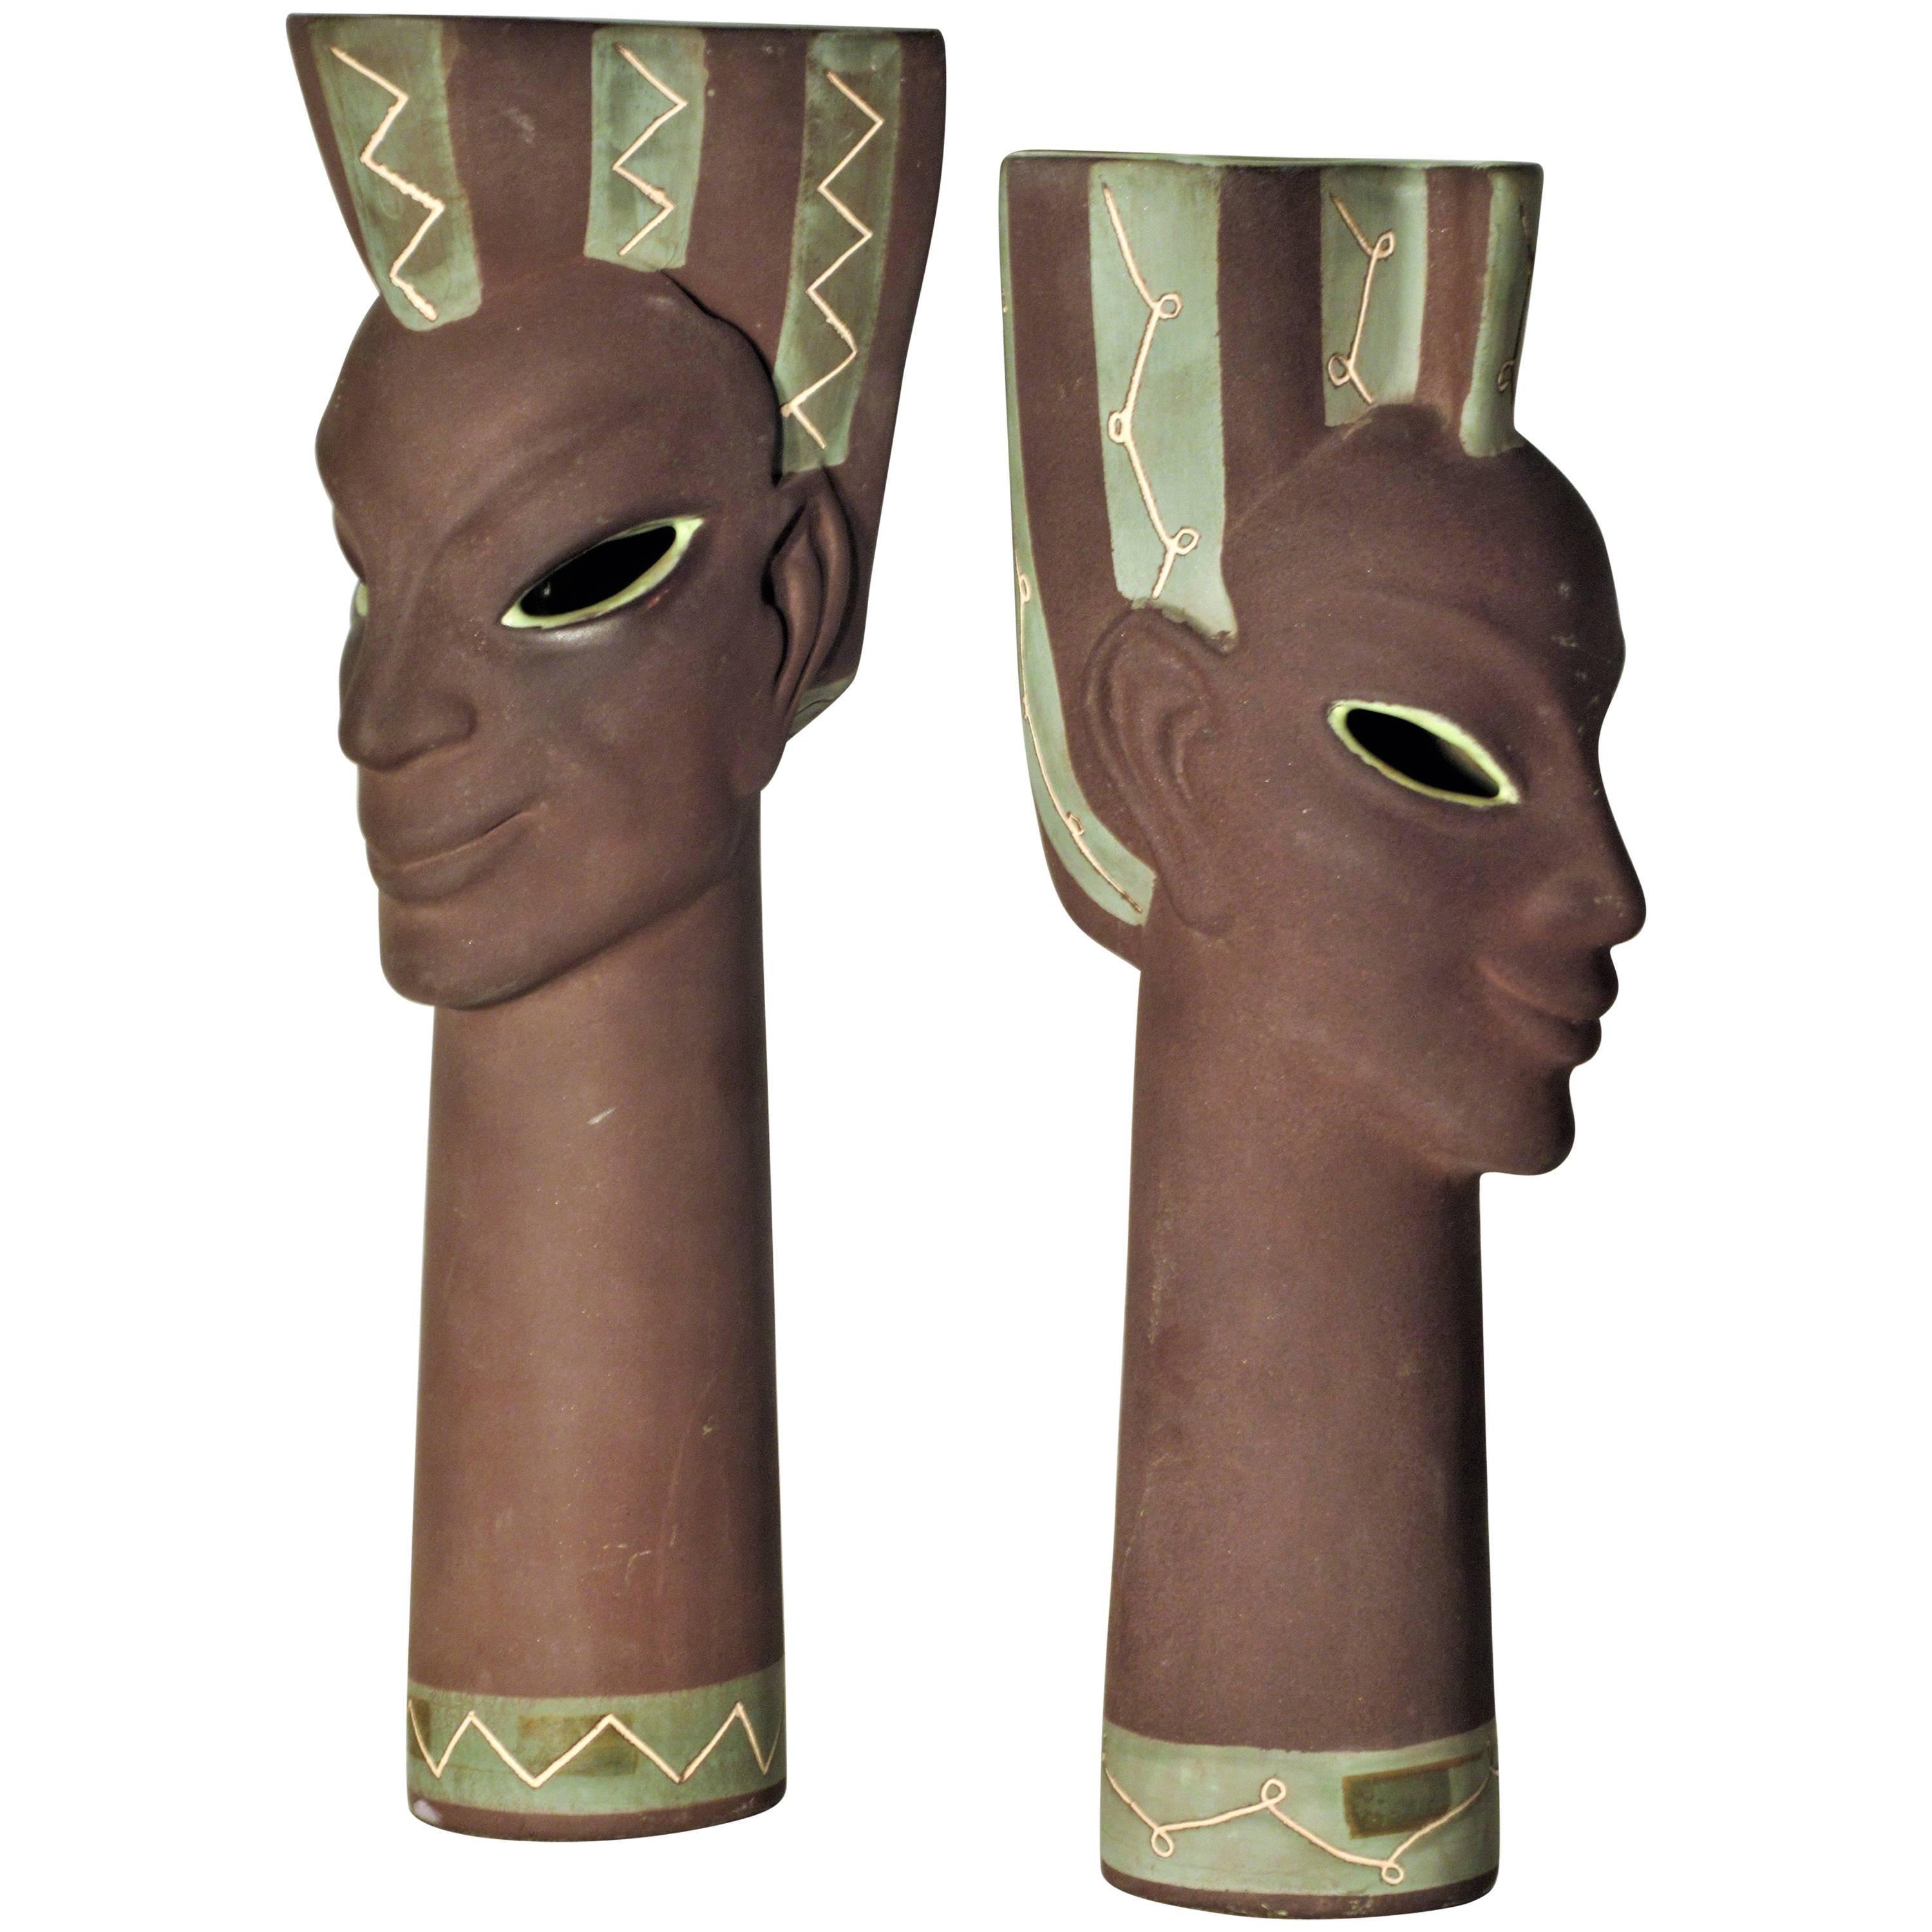 Exotic Ceramic Head Vase Sculptures